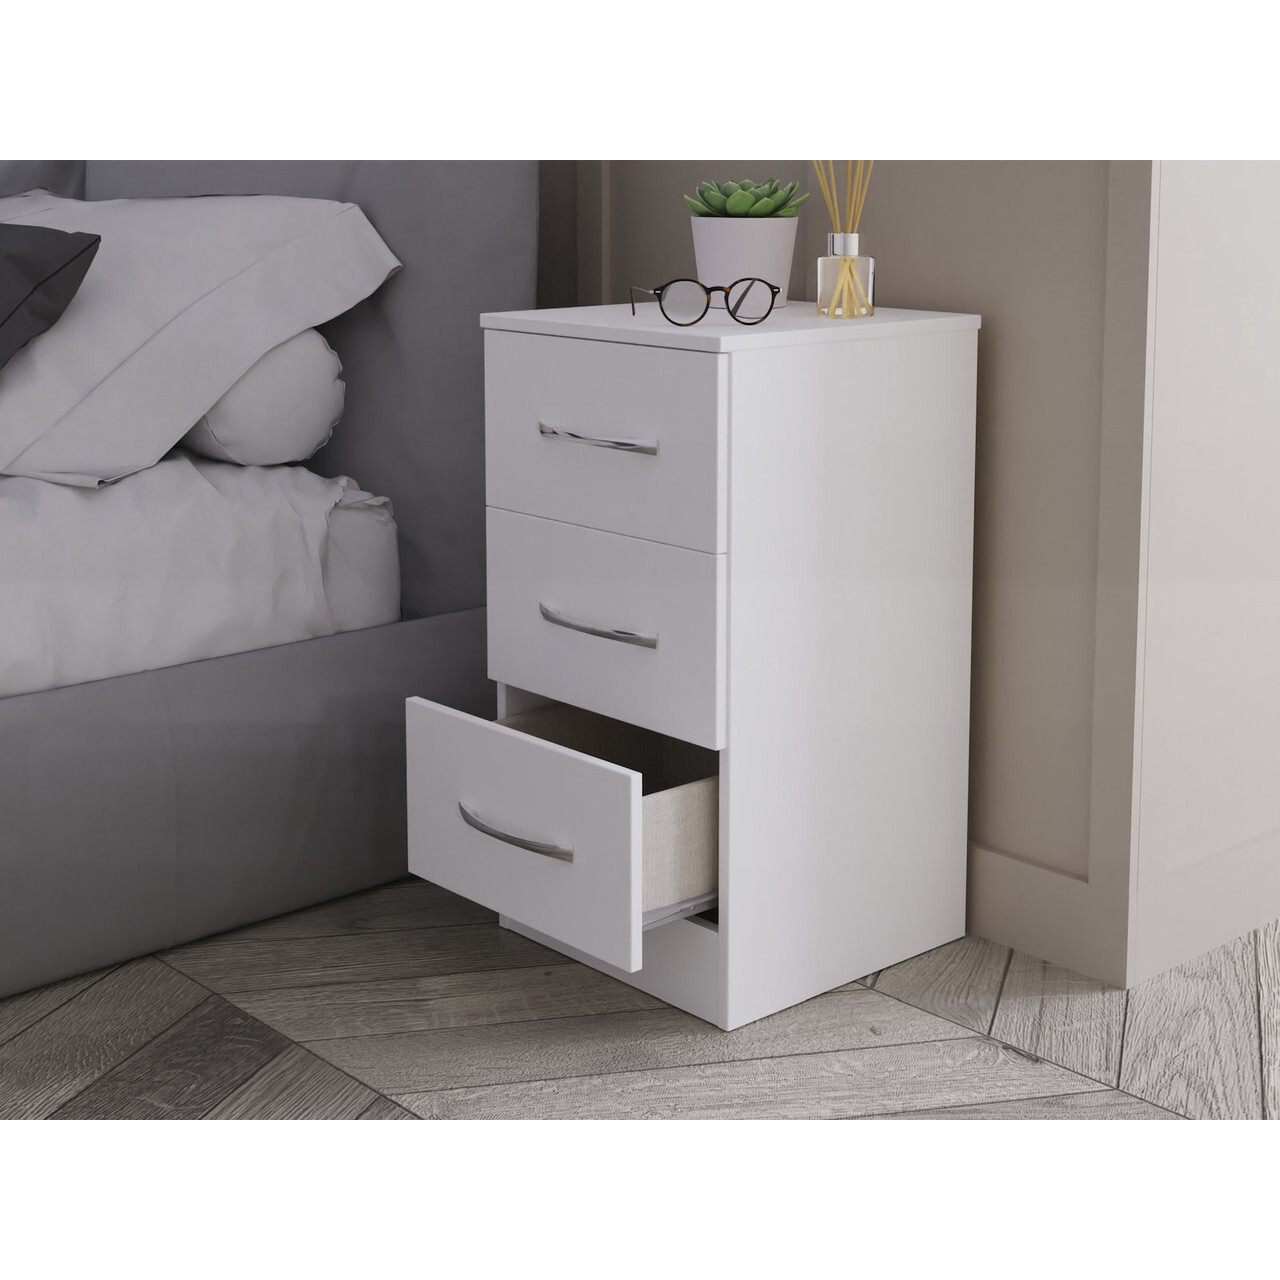 Ferrara 3 Drawer Bedside Cabinet - image 1